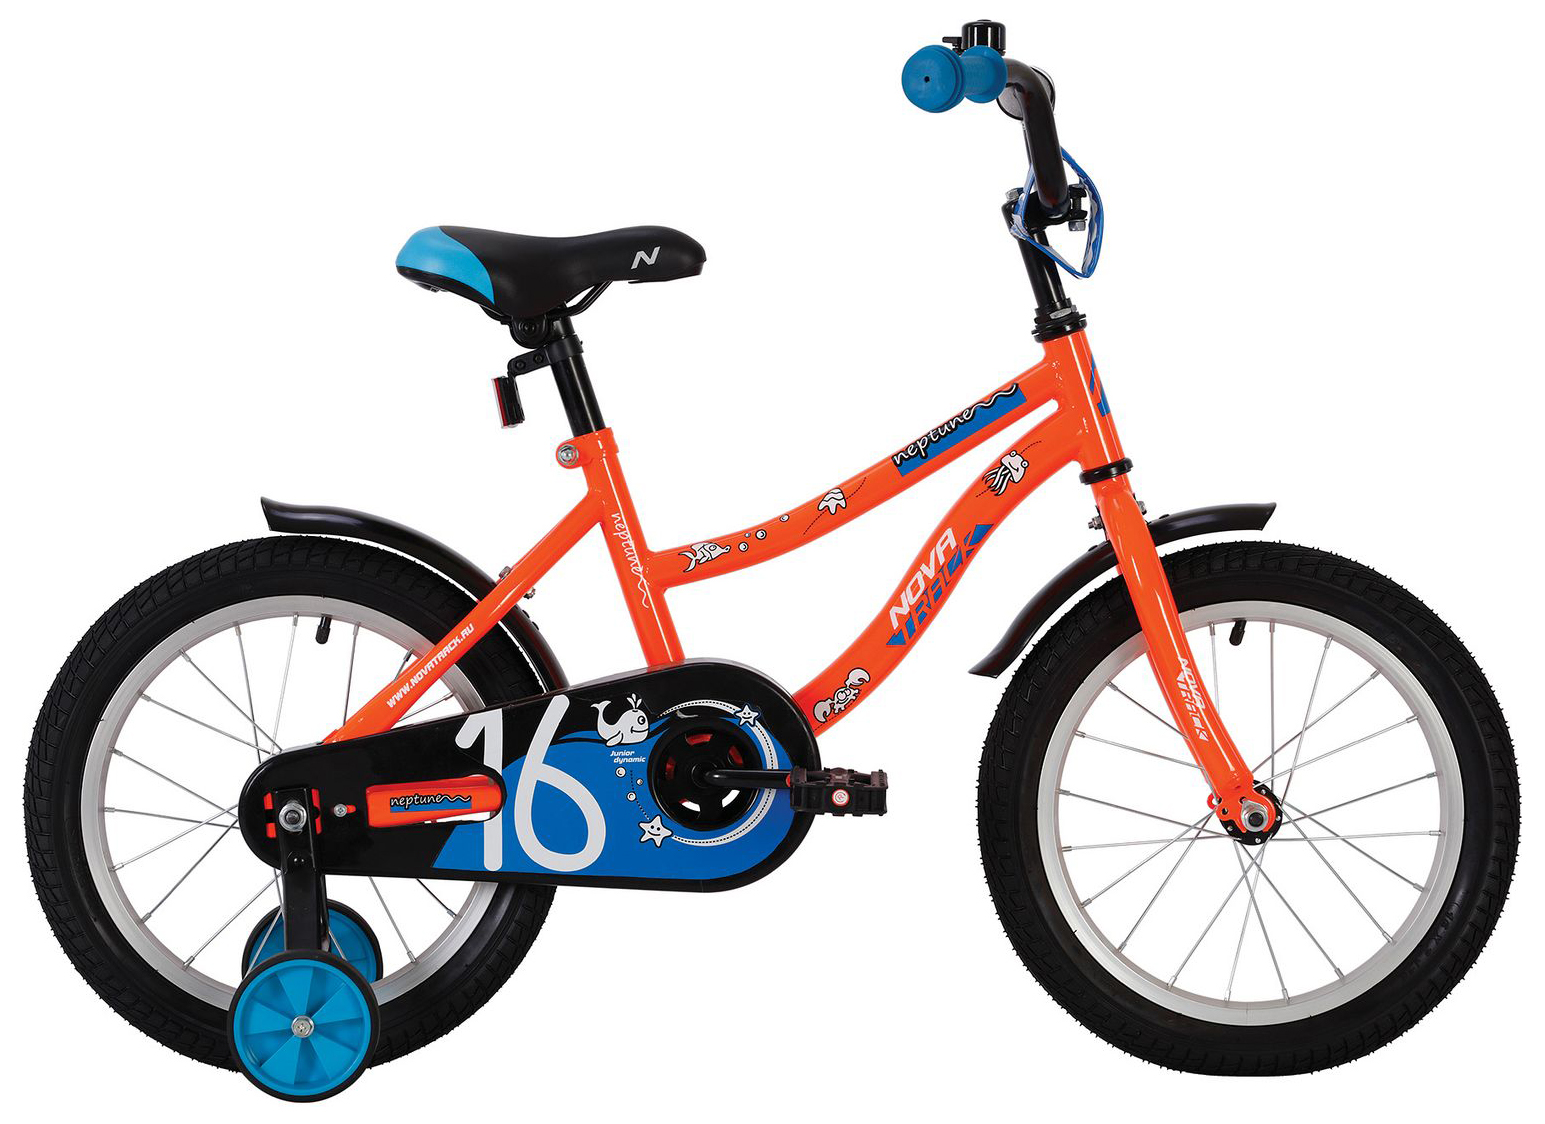  Отзывы о Детском велосипеде Novatrack Neptune 12 2020